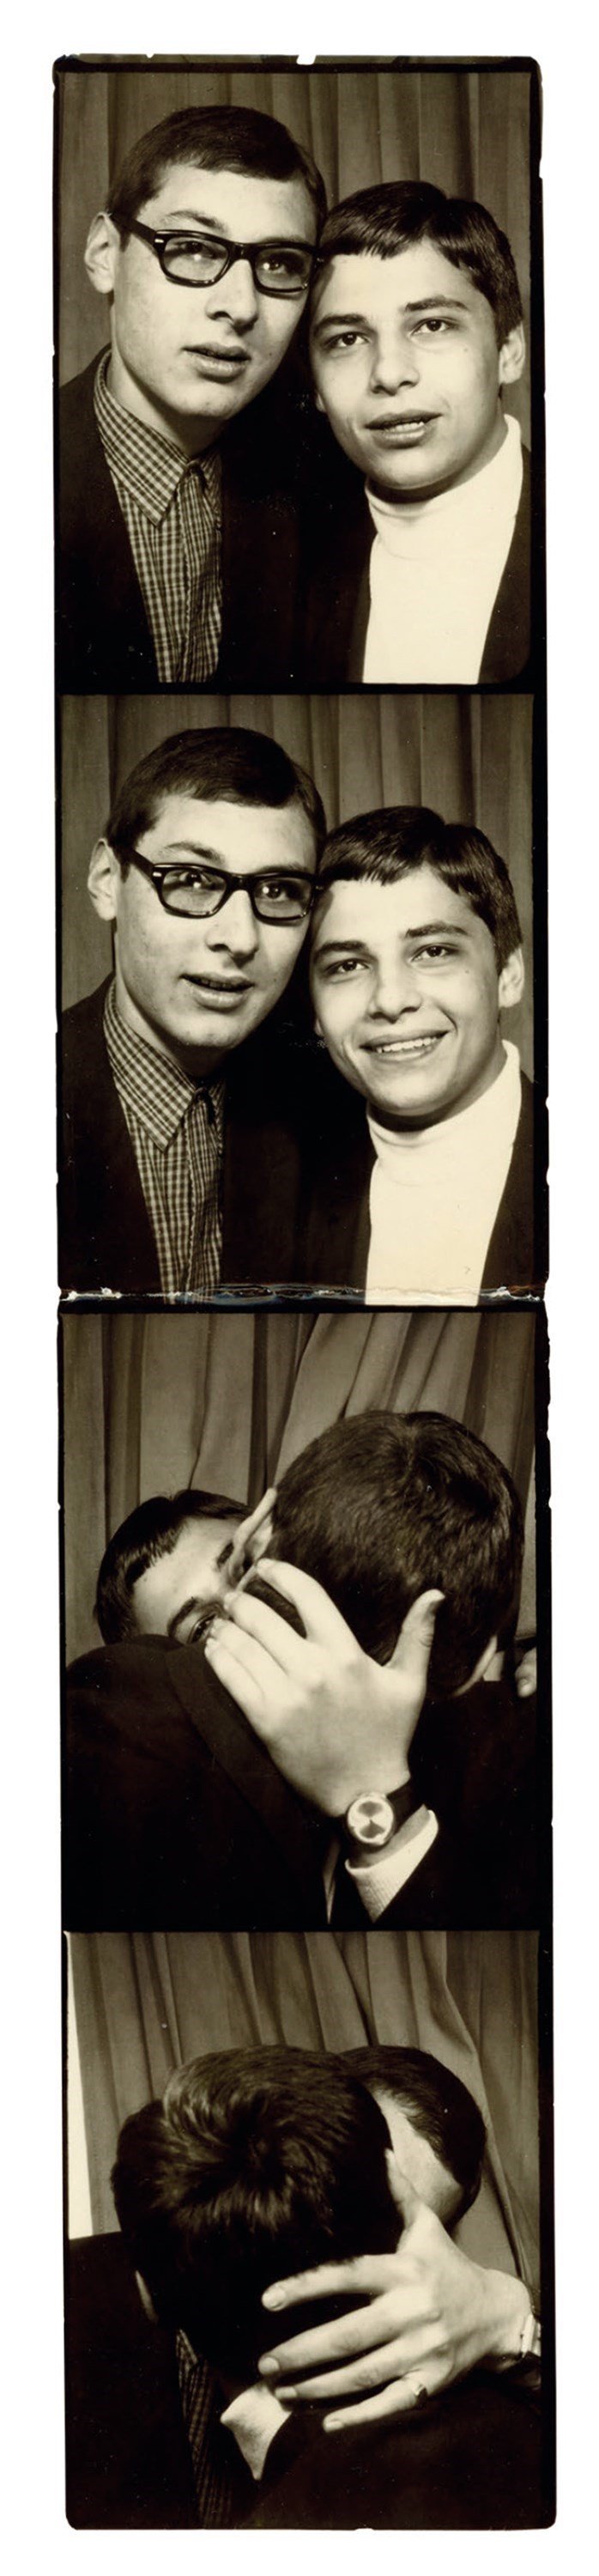 Машина времени: архивные фото о том, как целовались влюбленные 100 лет назад - фото 486039